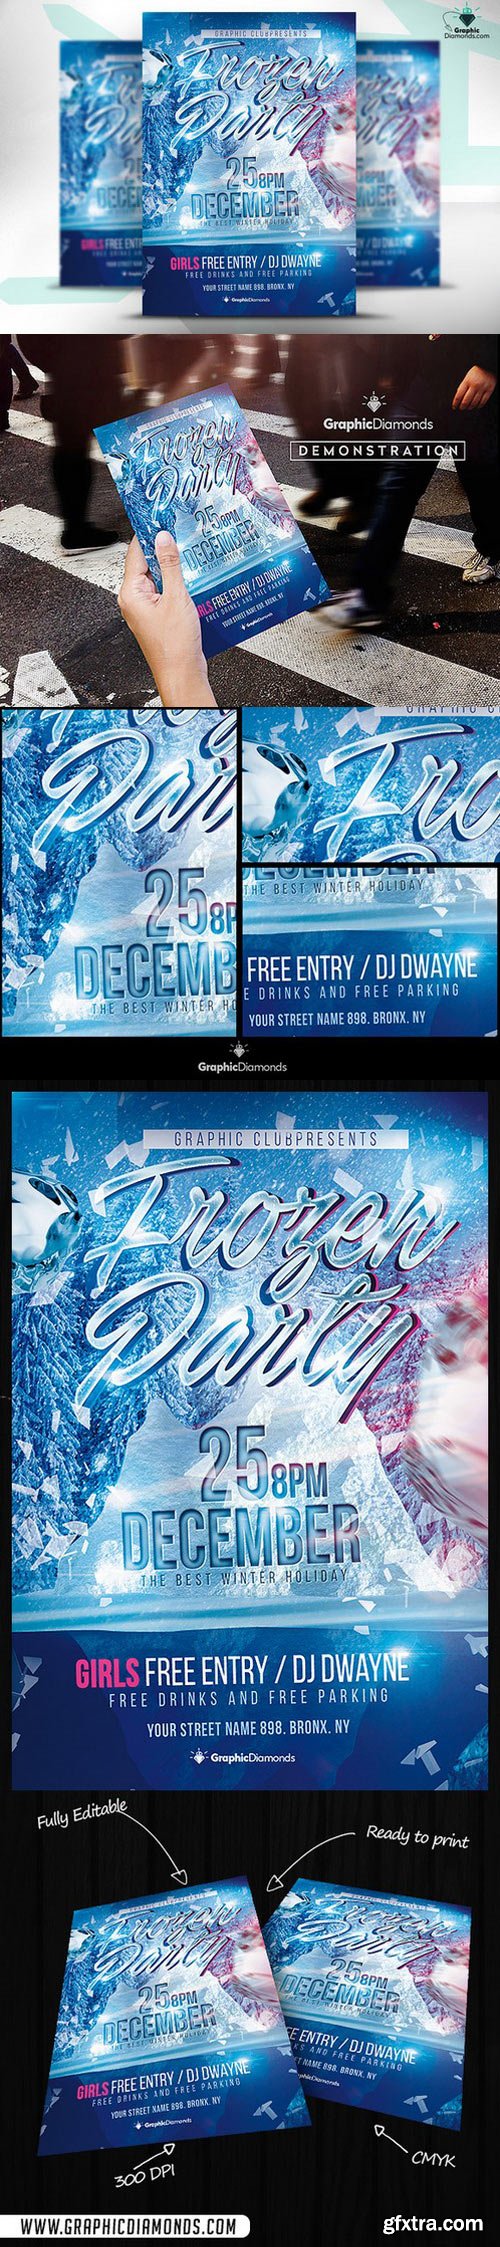 CM - Frozen Party Flyer PSD 475955